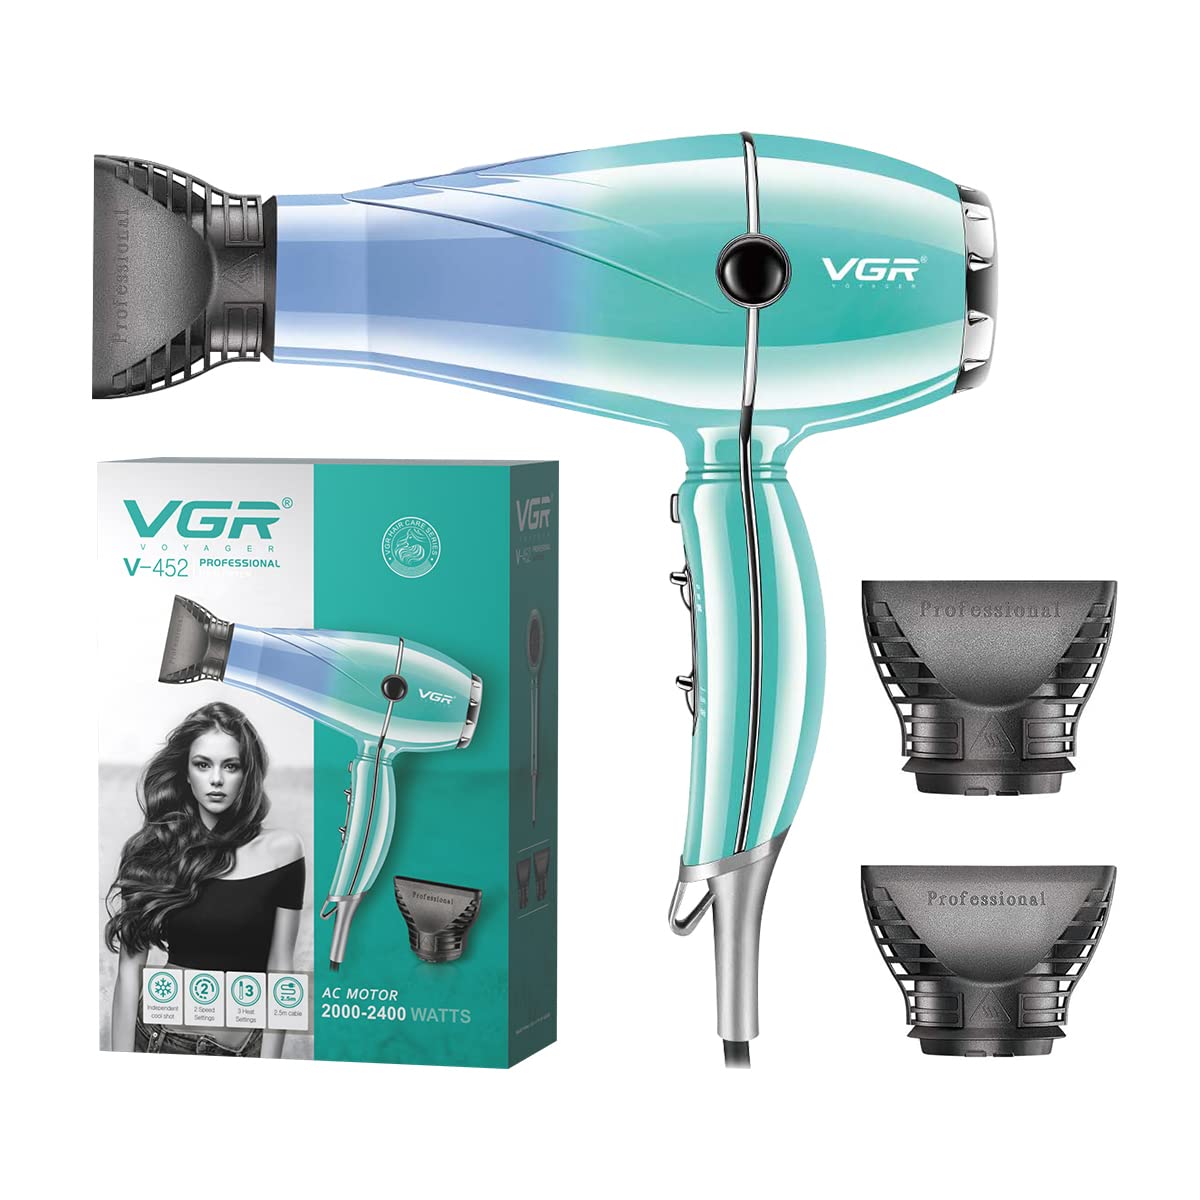 V-452 / VGR Hair dryer 2200watt AC Motor hair Dryer / 2200 watt / BLACK